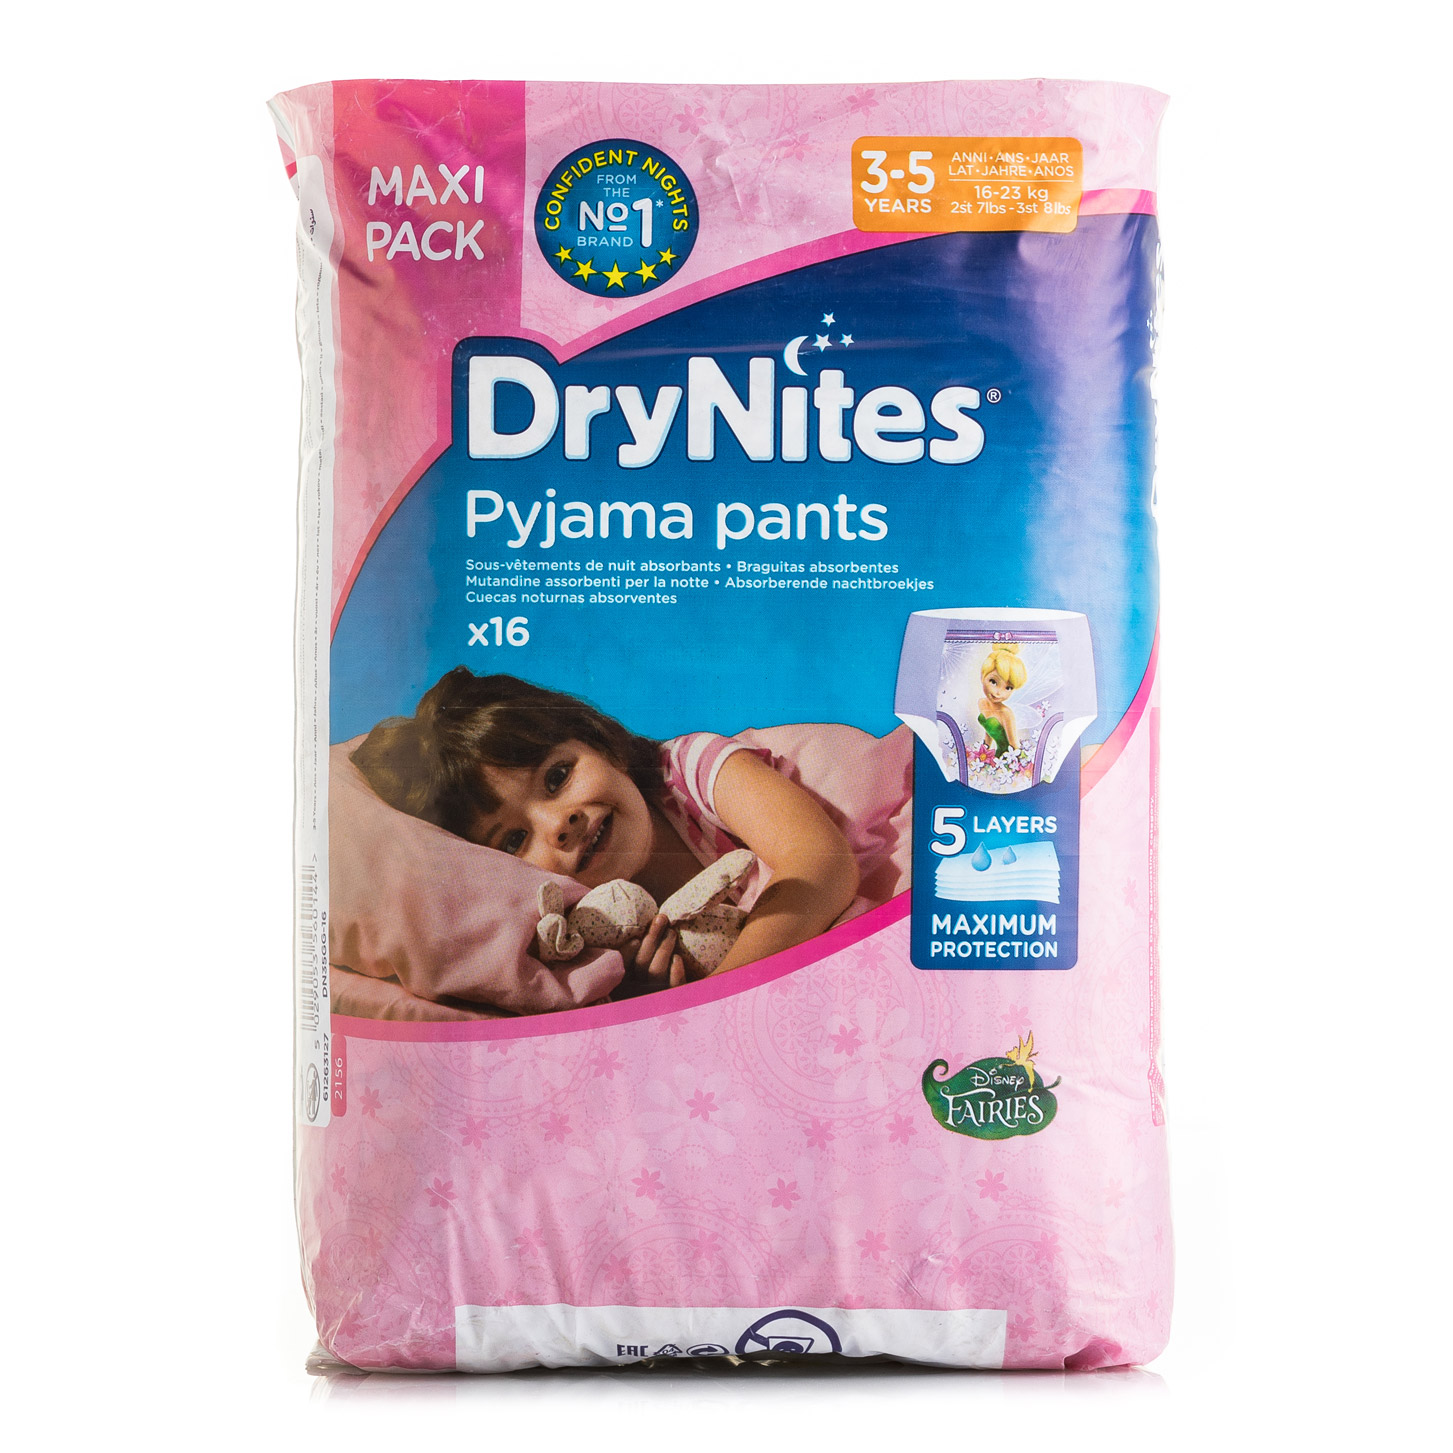 DryNites Pyjama Pants: comodidad y protección para niños de 3-5 años.